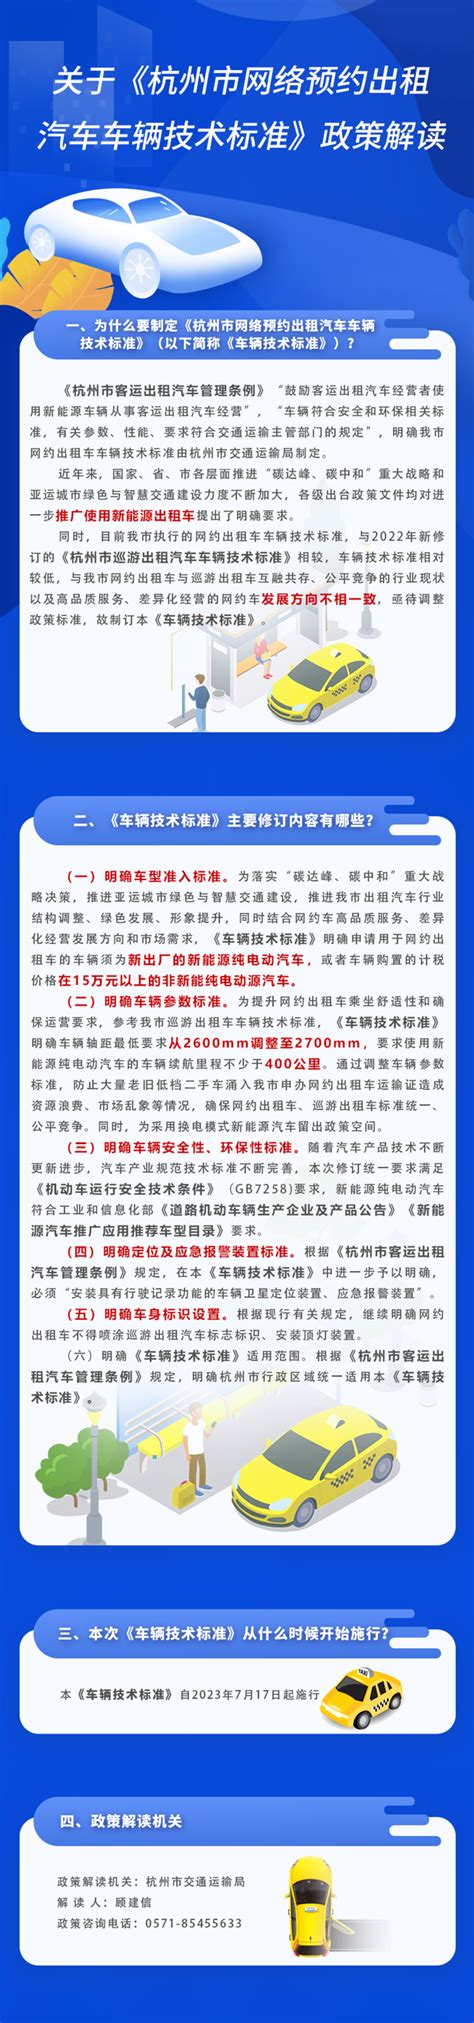 关于《杭州市网络预约出租汽车车辆技术标准》的图文政策解读